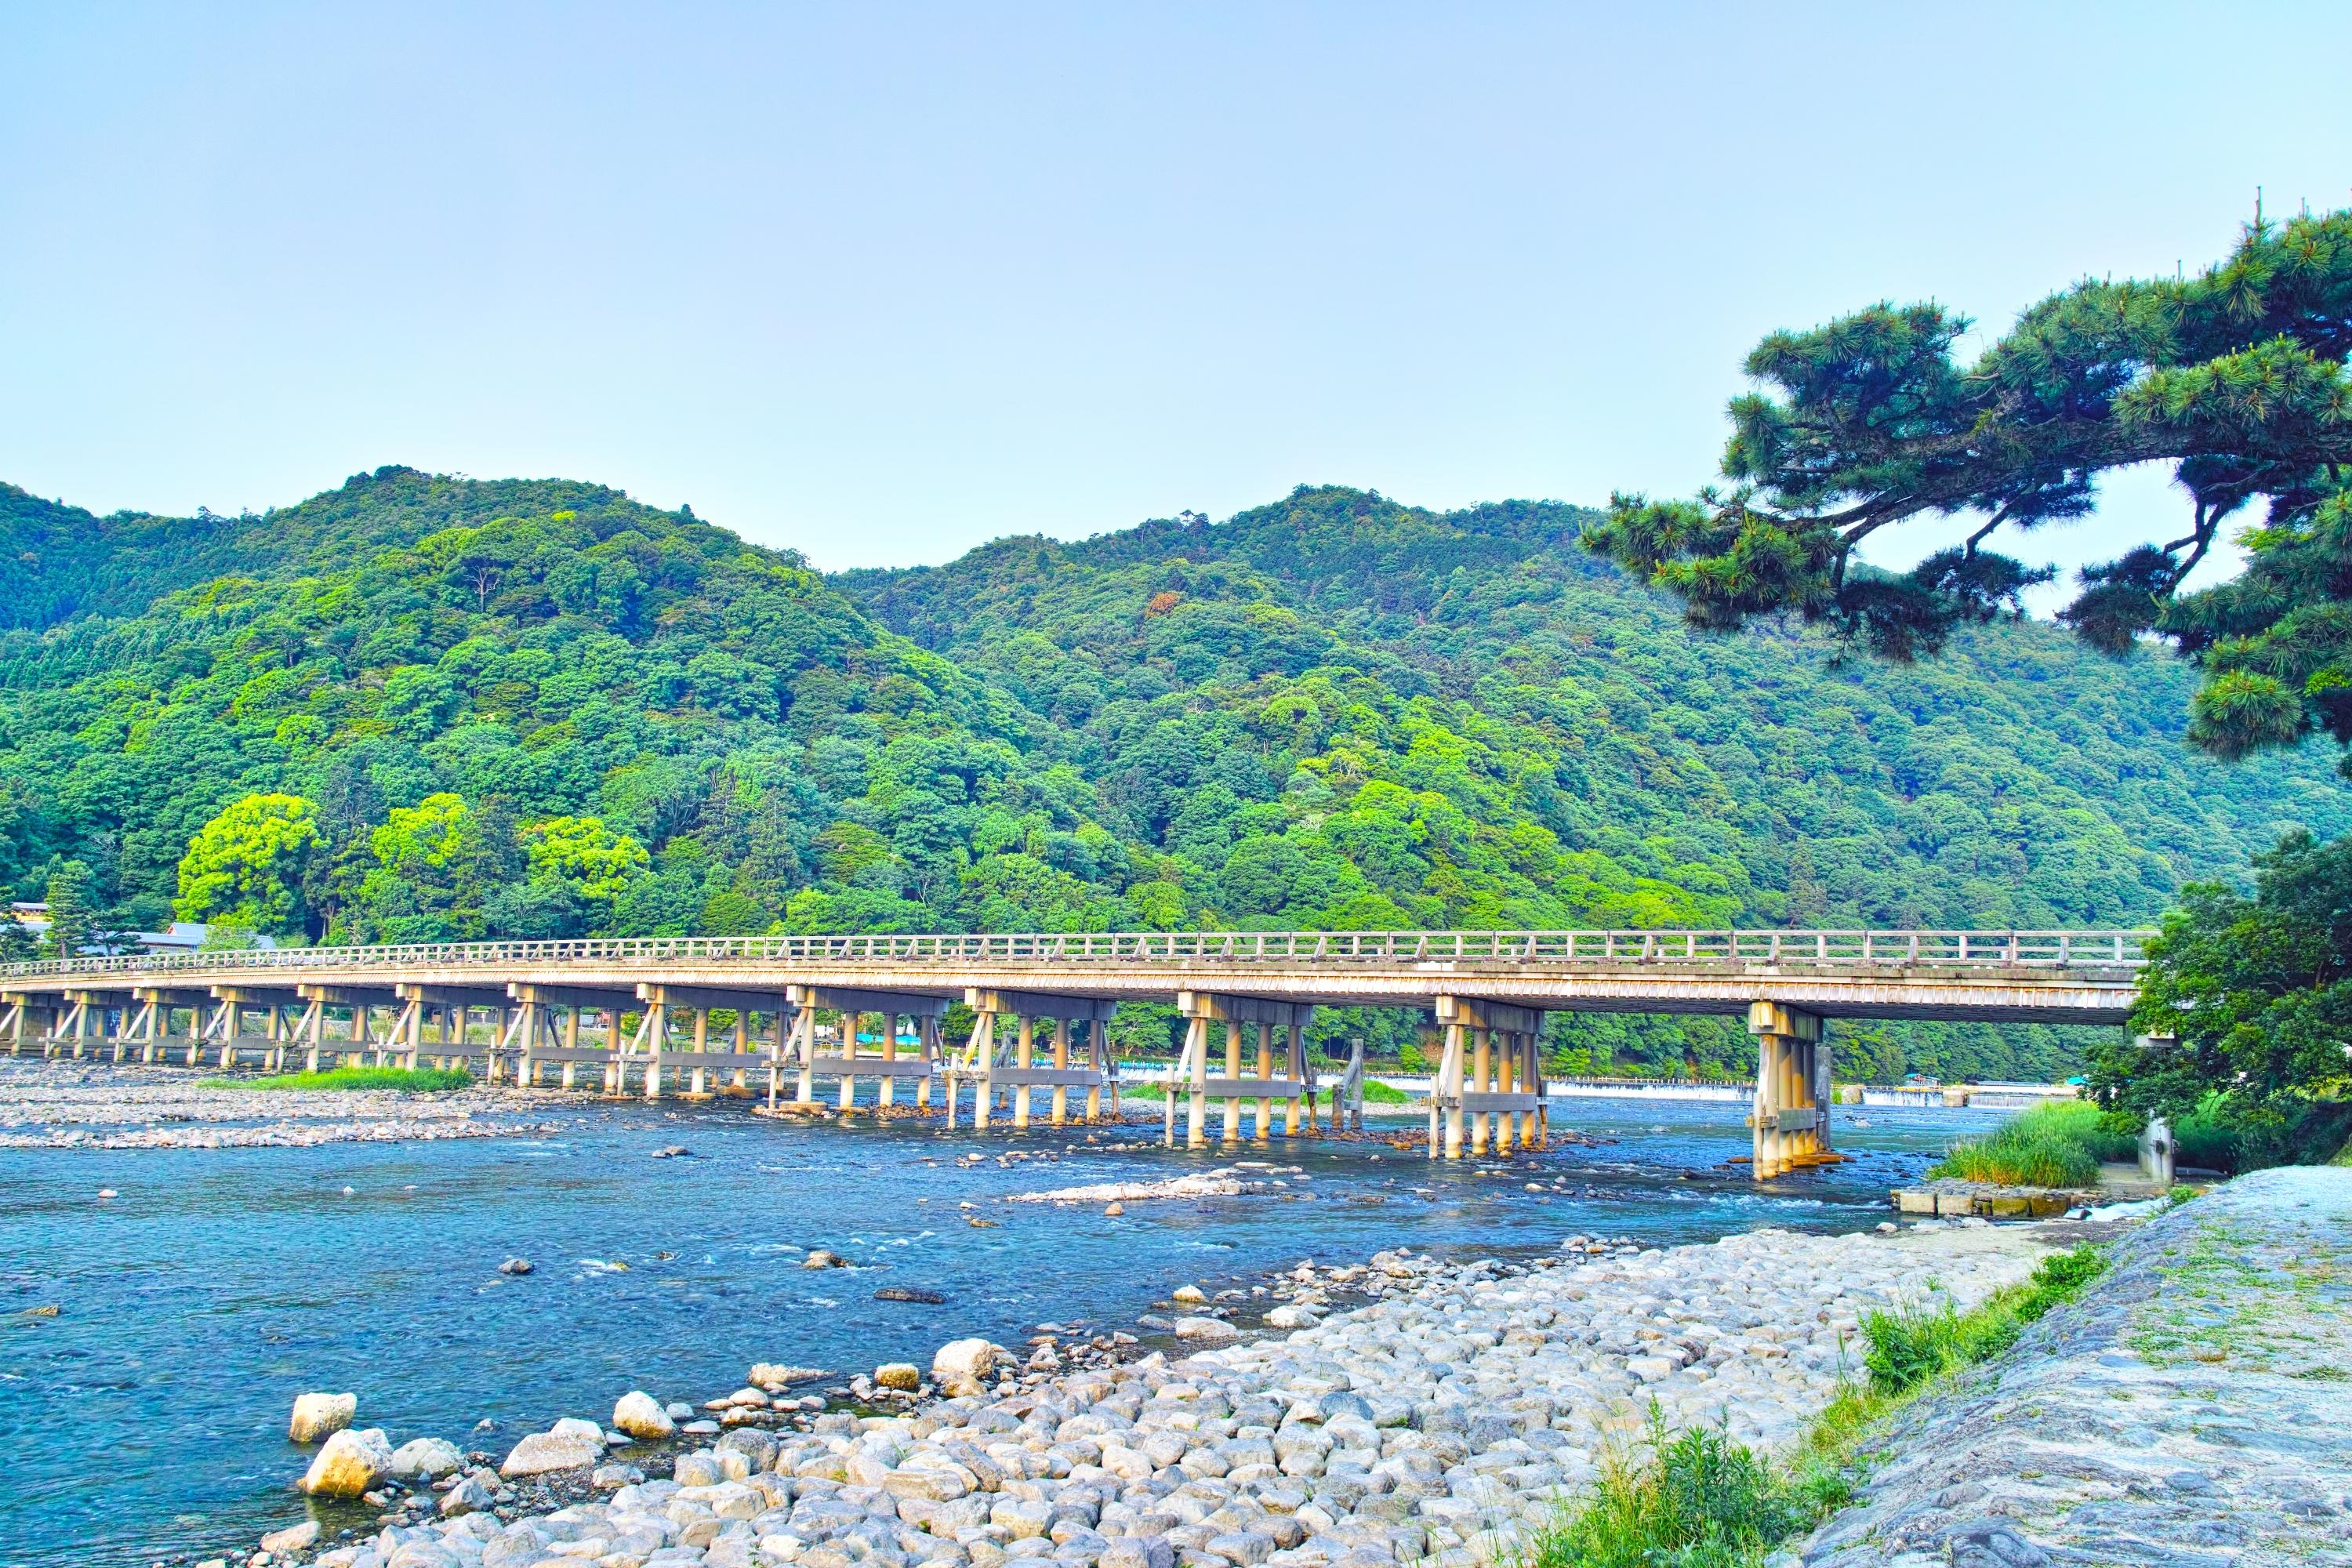 嵐山・渡月橋 紅葉 人気観光名所の煌びやかな彩り | 京都もよう KYOTO MOYOU